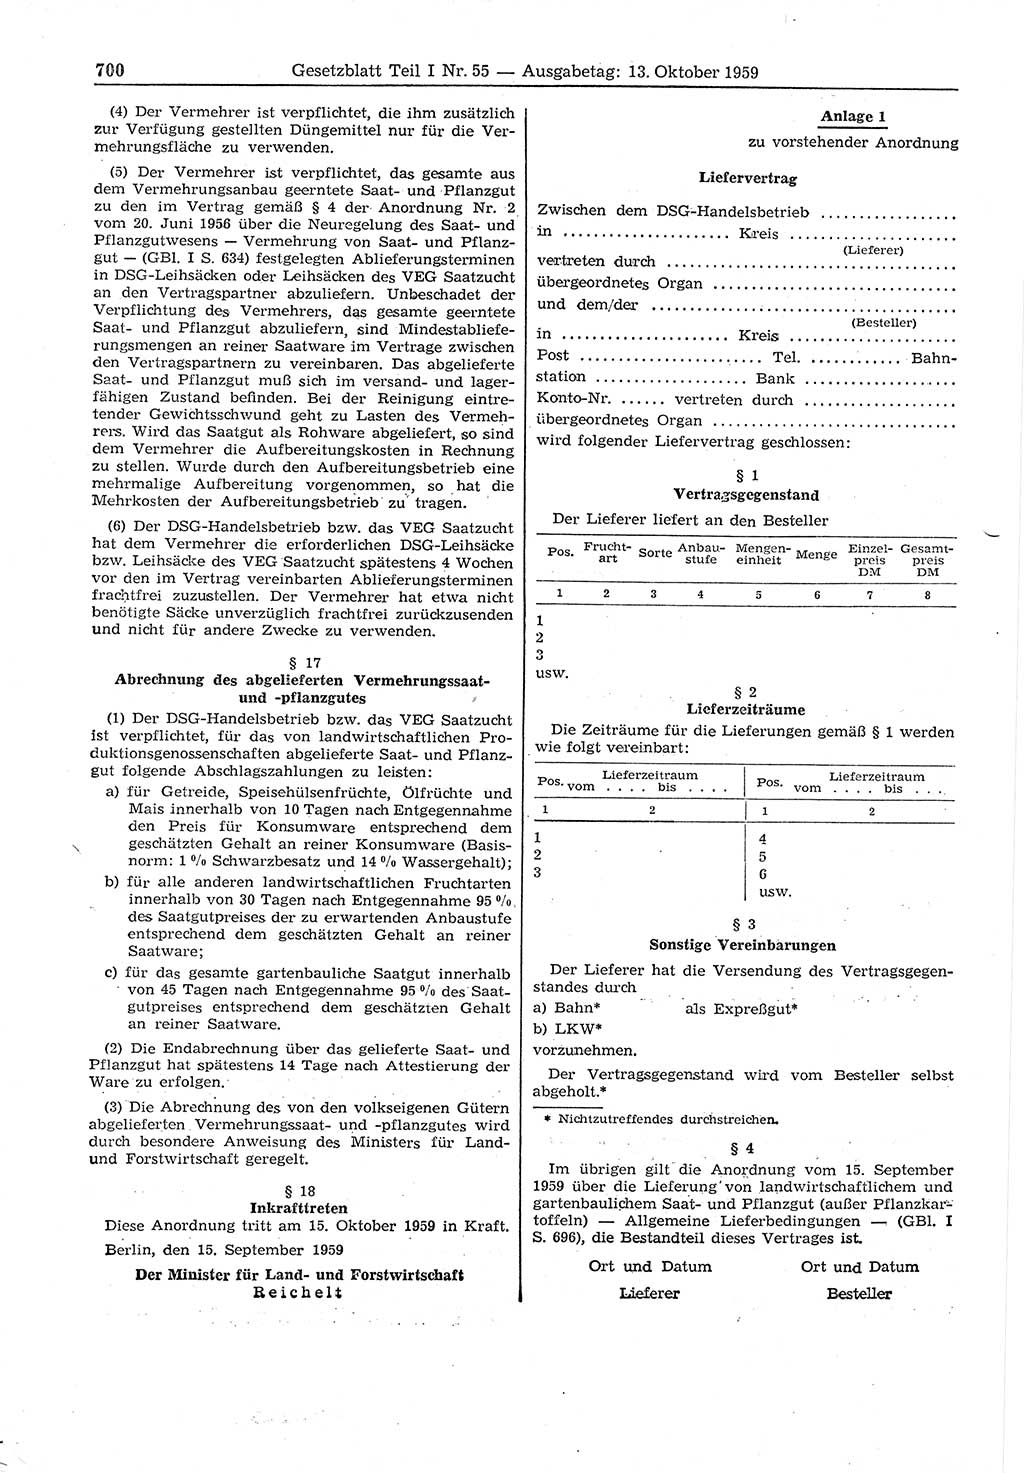 Gesetzblatt (GBl.) der Deutschen Demokratischen Republik (DDR) Teil Ⅰ 1959, Seite 700 (GBl. DDR Ⅰ 1959, S. 700)